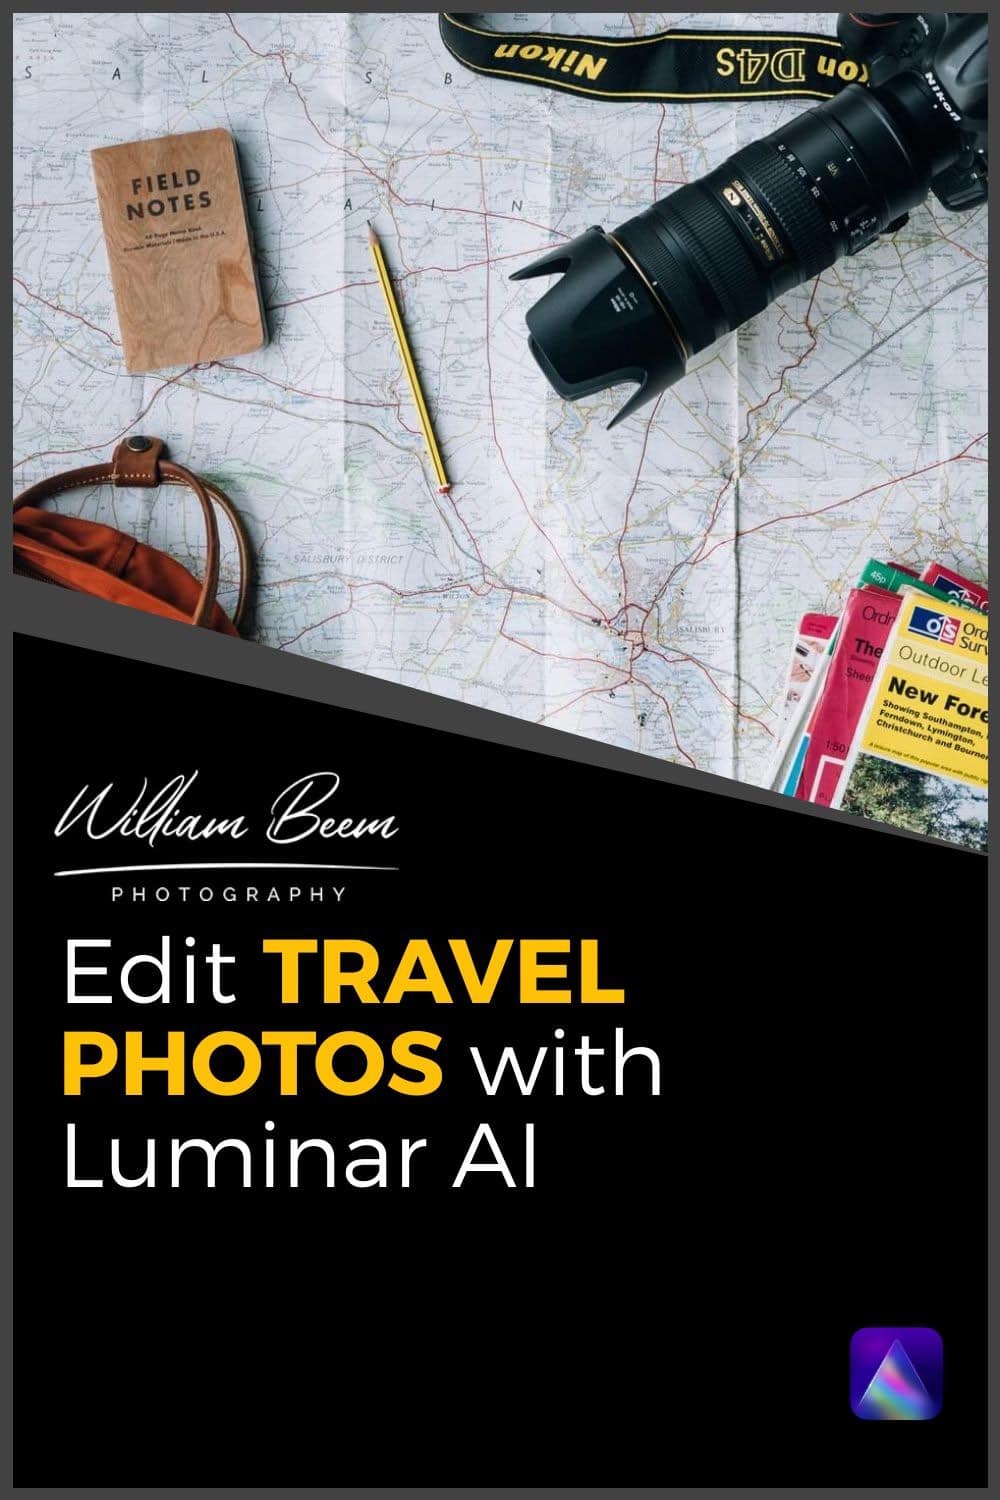 Editing Travel Photos with Luminar